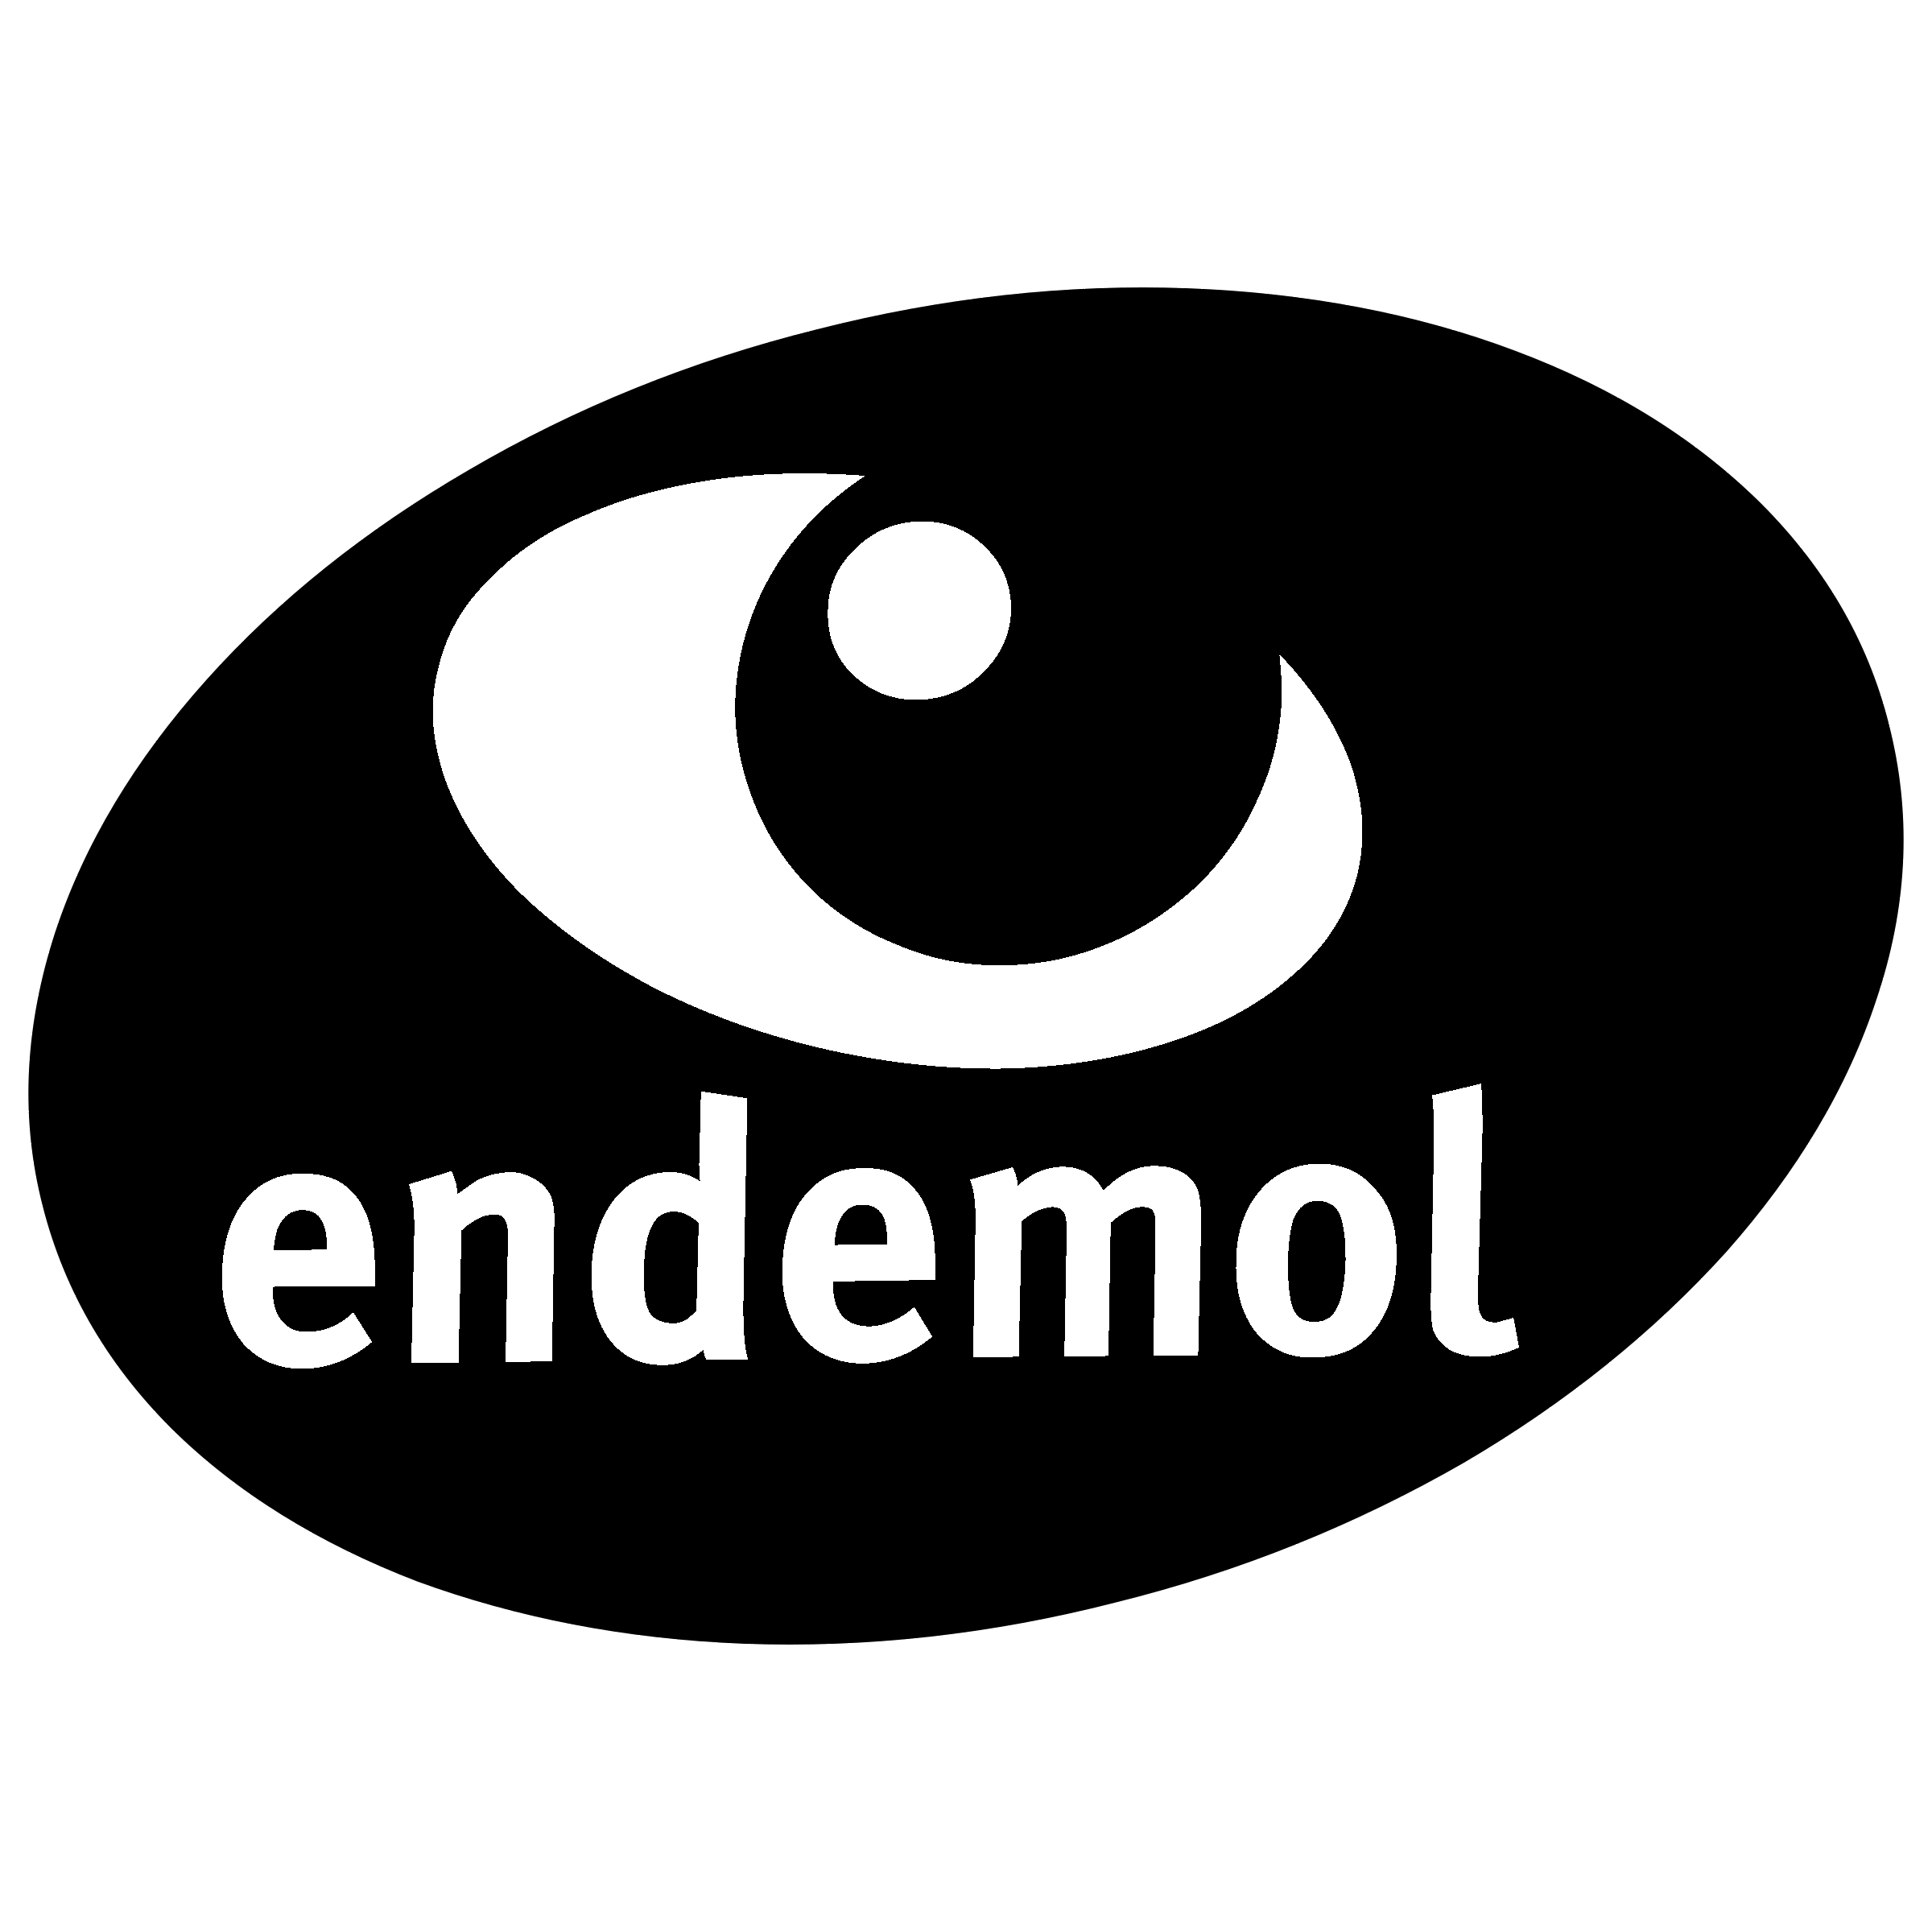 Endemol Logo - Endemol Logo PNG Transparent & SVG Vector - Freebie Supply